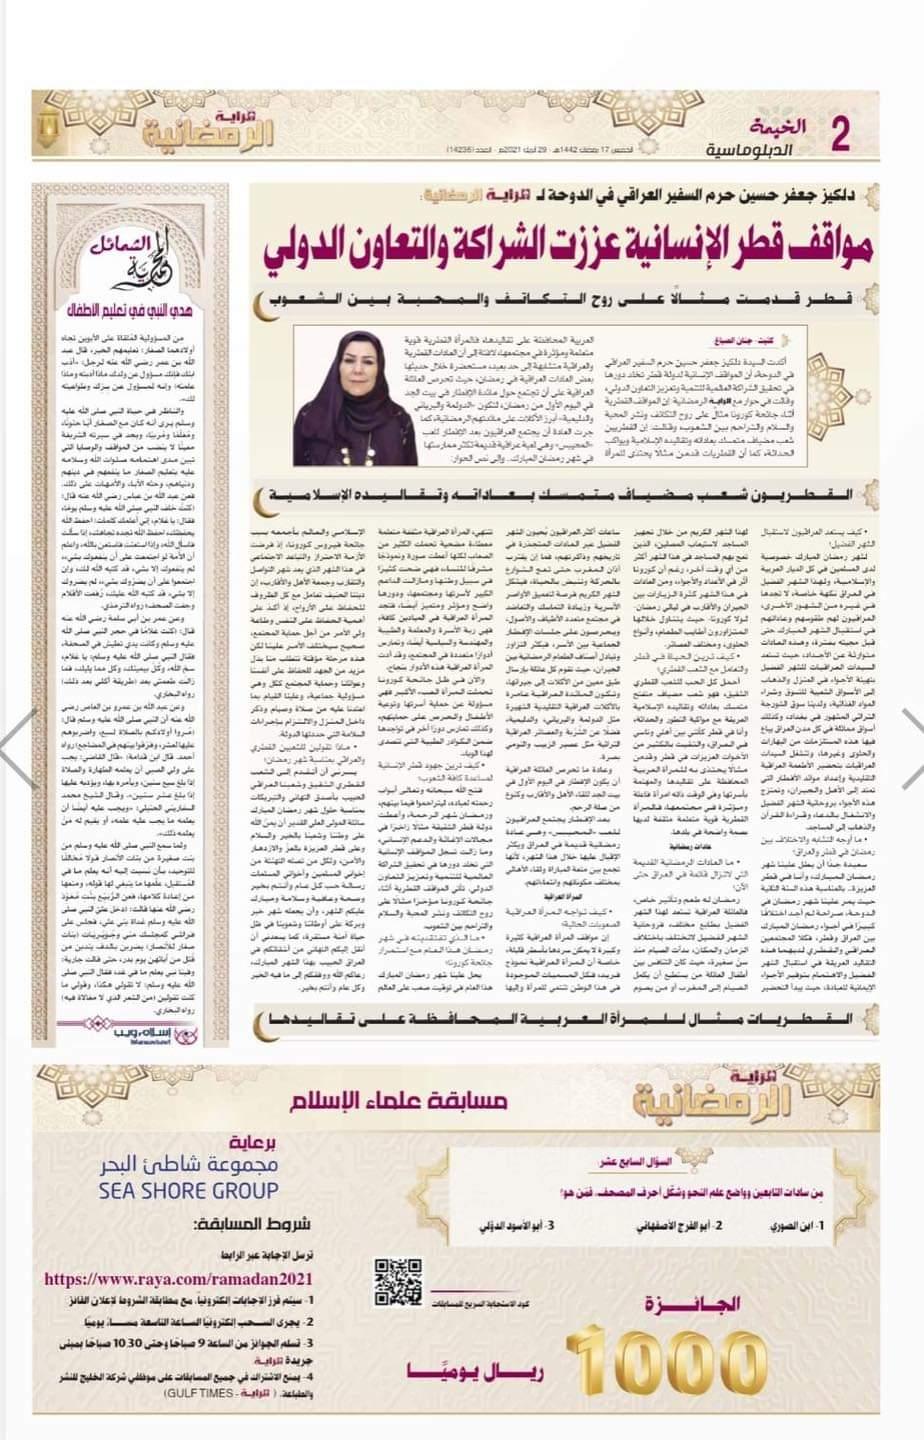 حرم سفير جمهورية العراق في قطر السيدة دلگير جعفر حسين في مقابلة صحفية رمضانية مع الصحافة القطرية